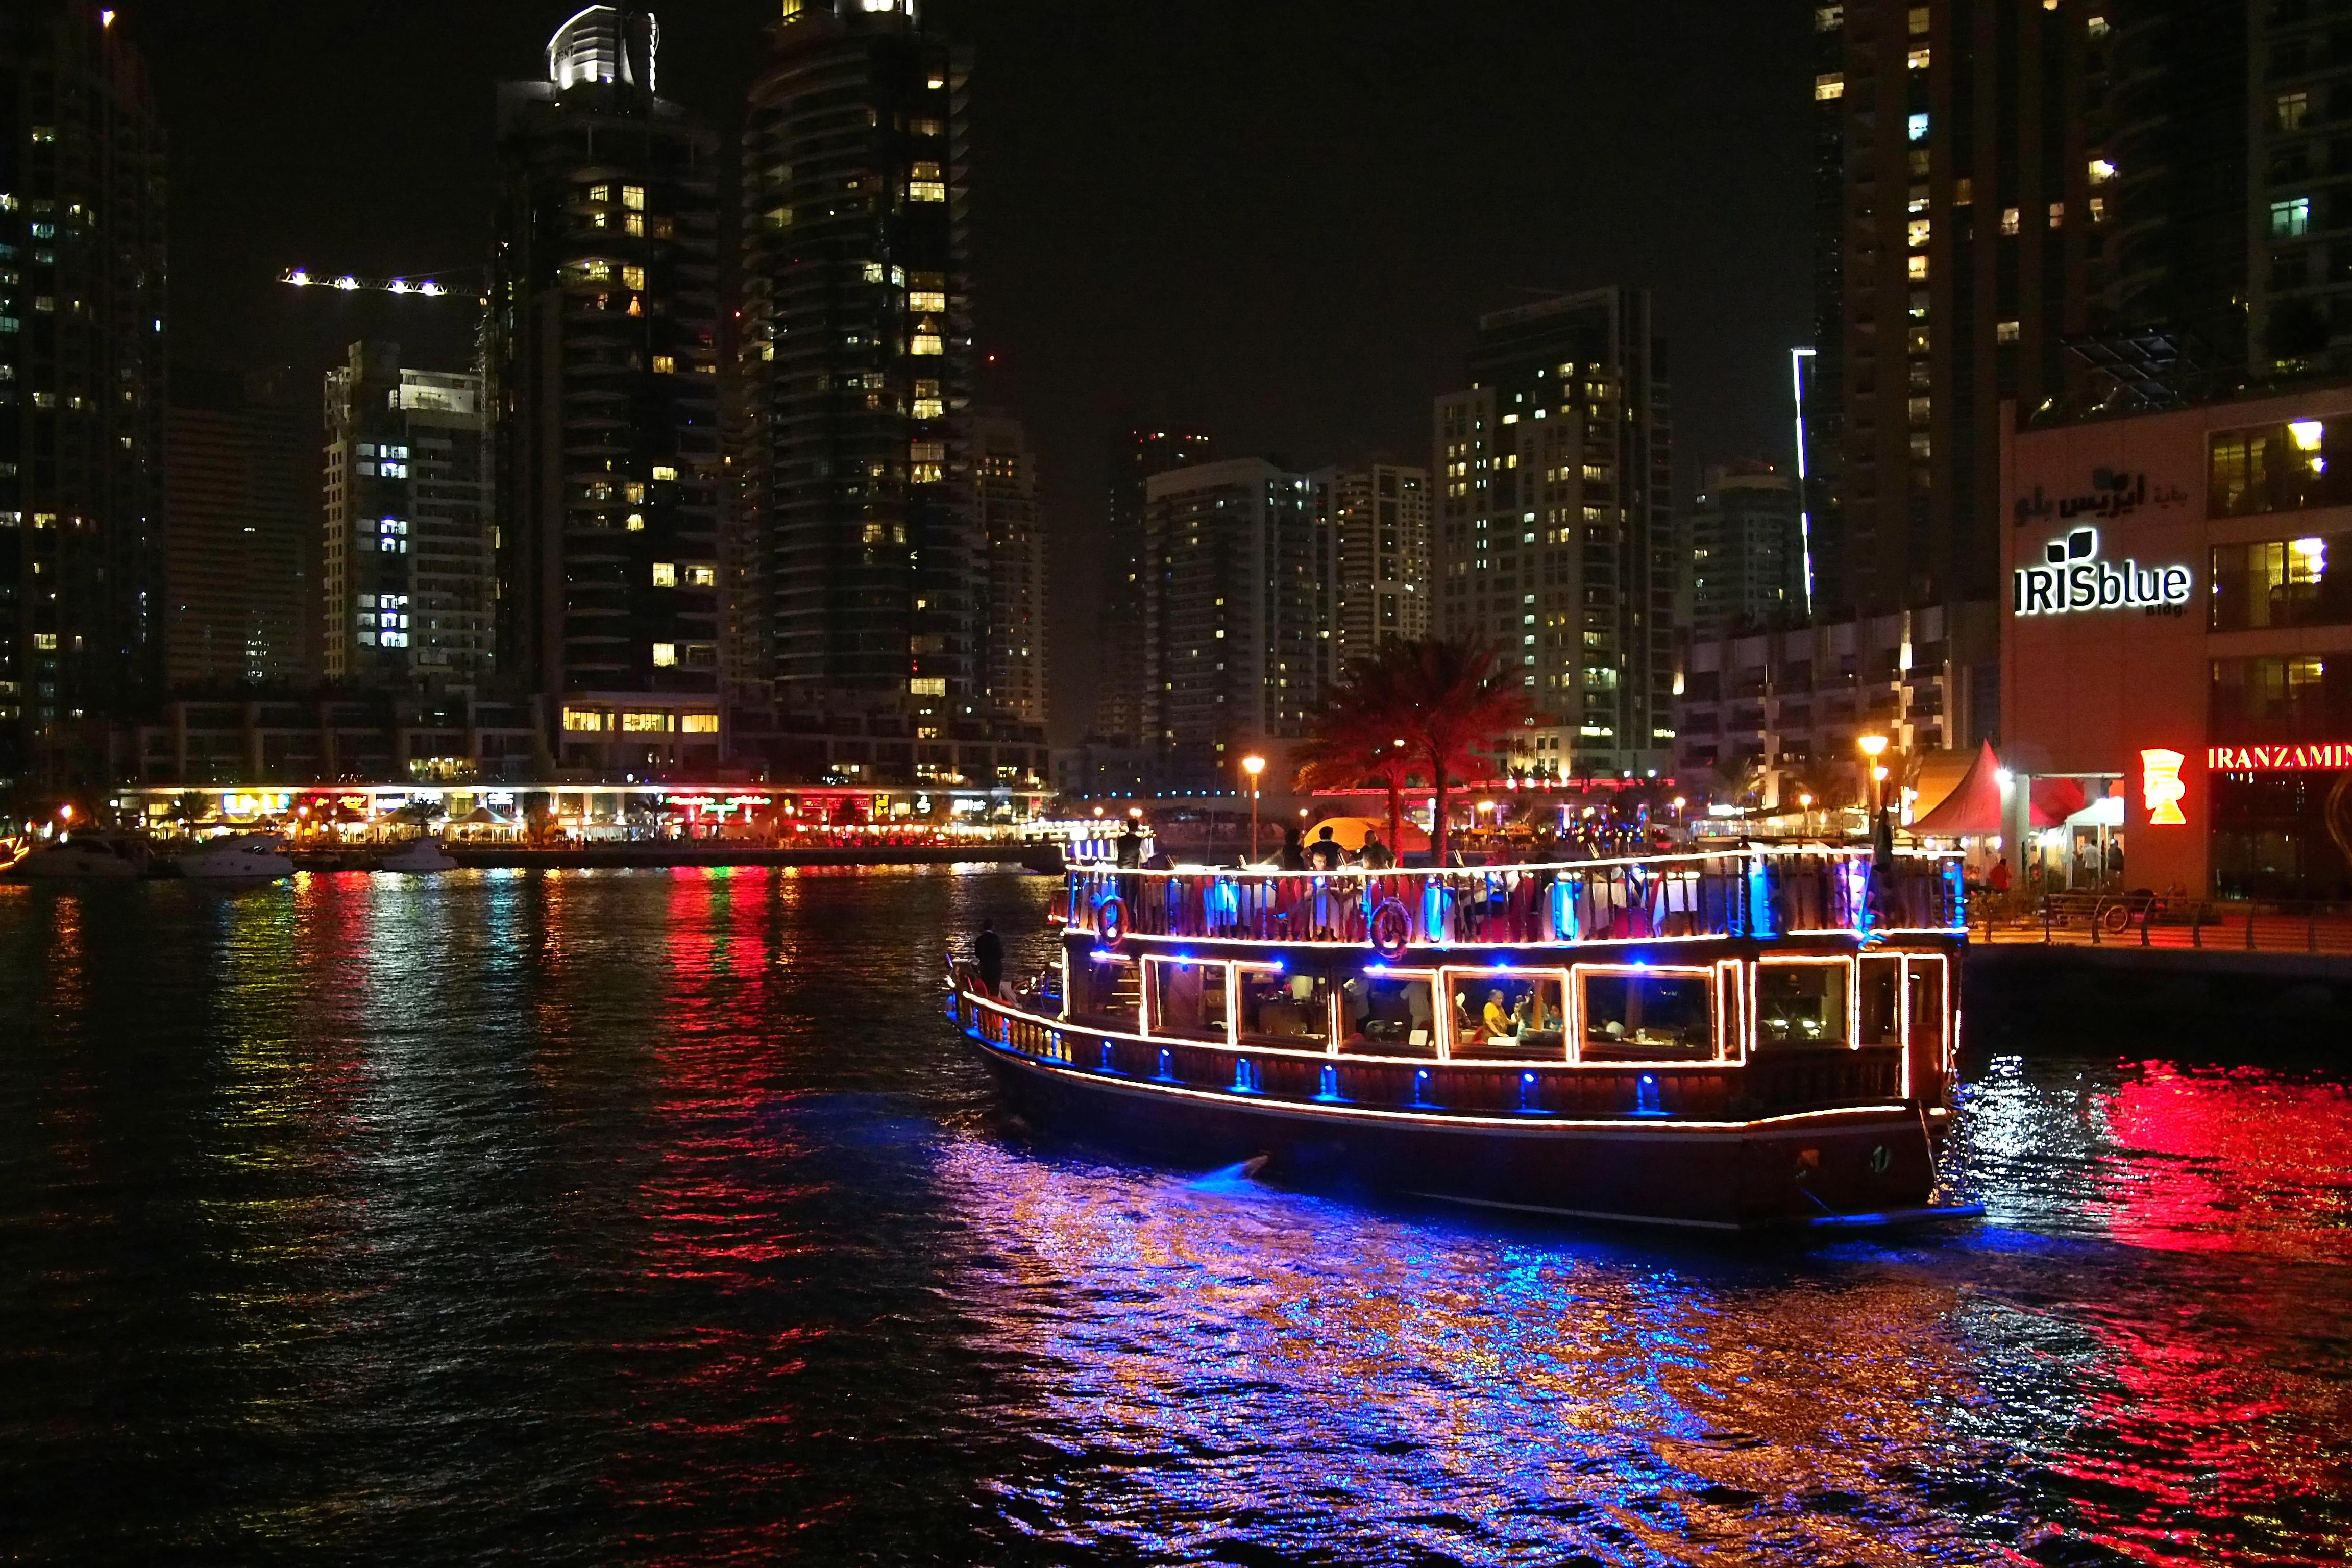 Luxury Dhow Cruise Dubai Marina